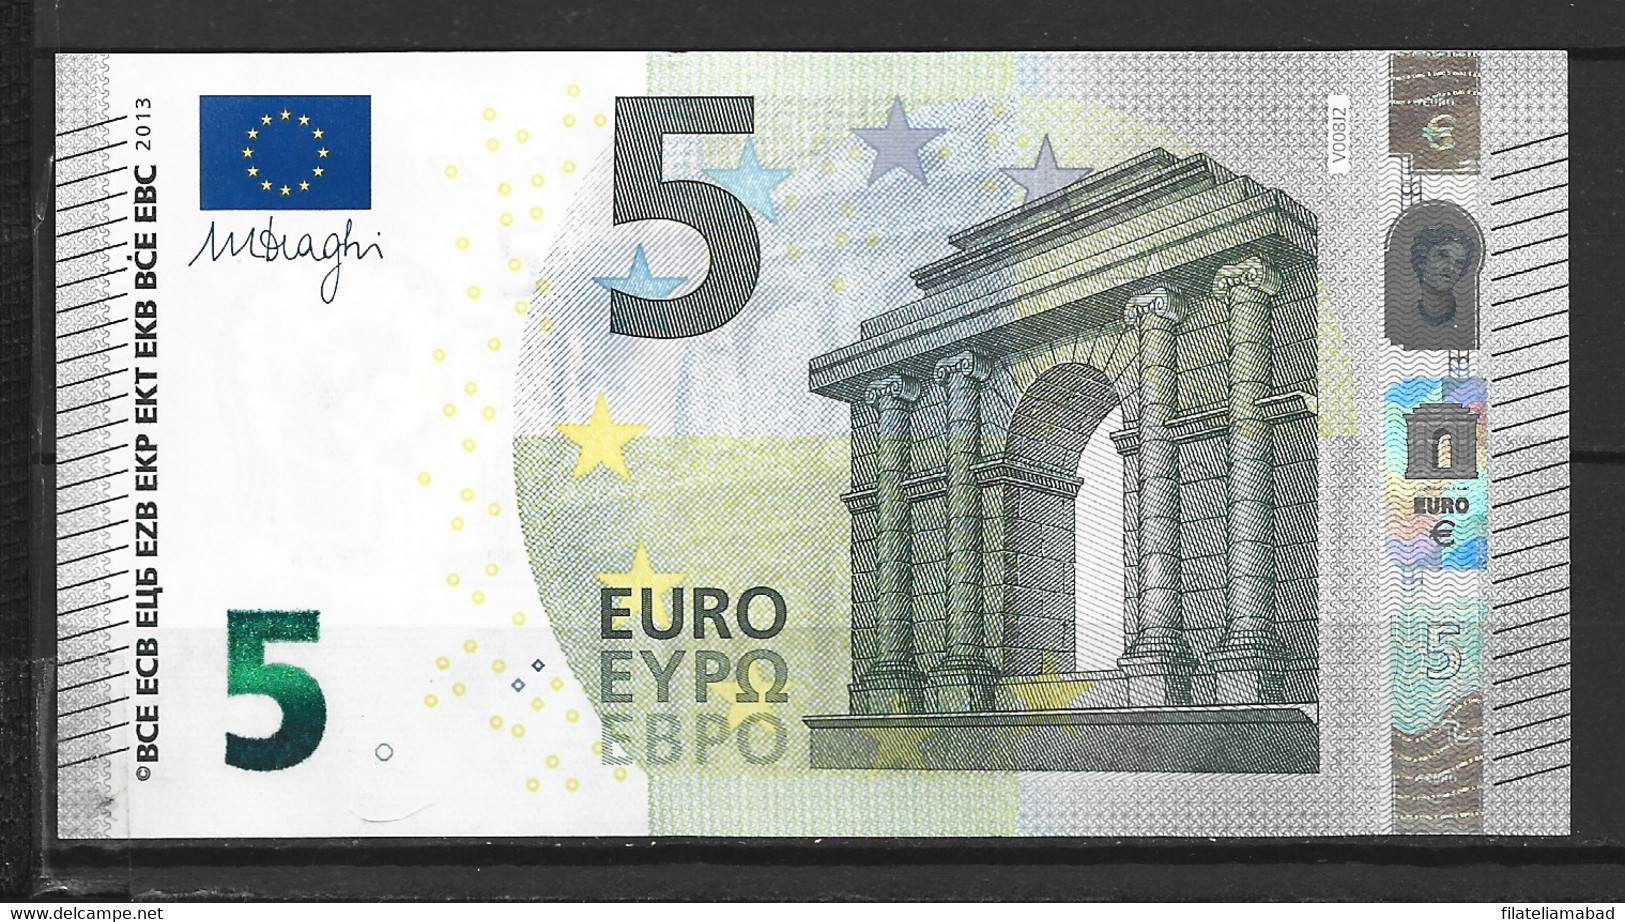 Billete 5 euros – Canal del Área de Tecnología Educativa